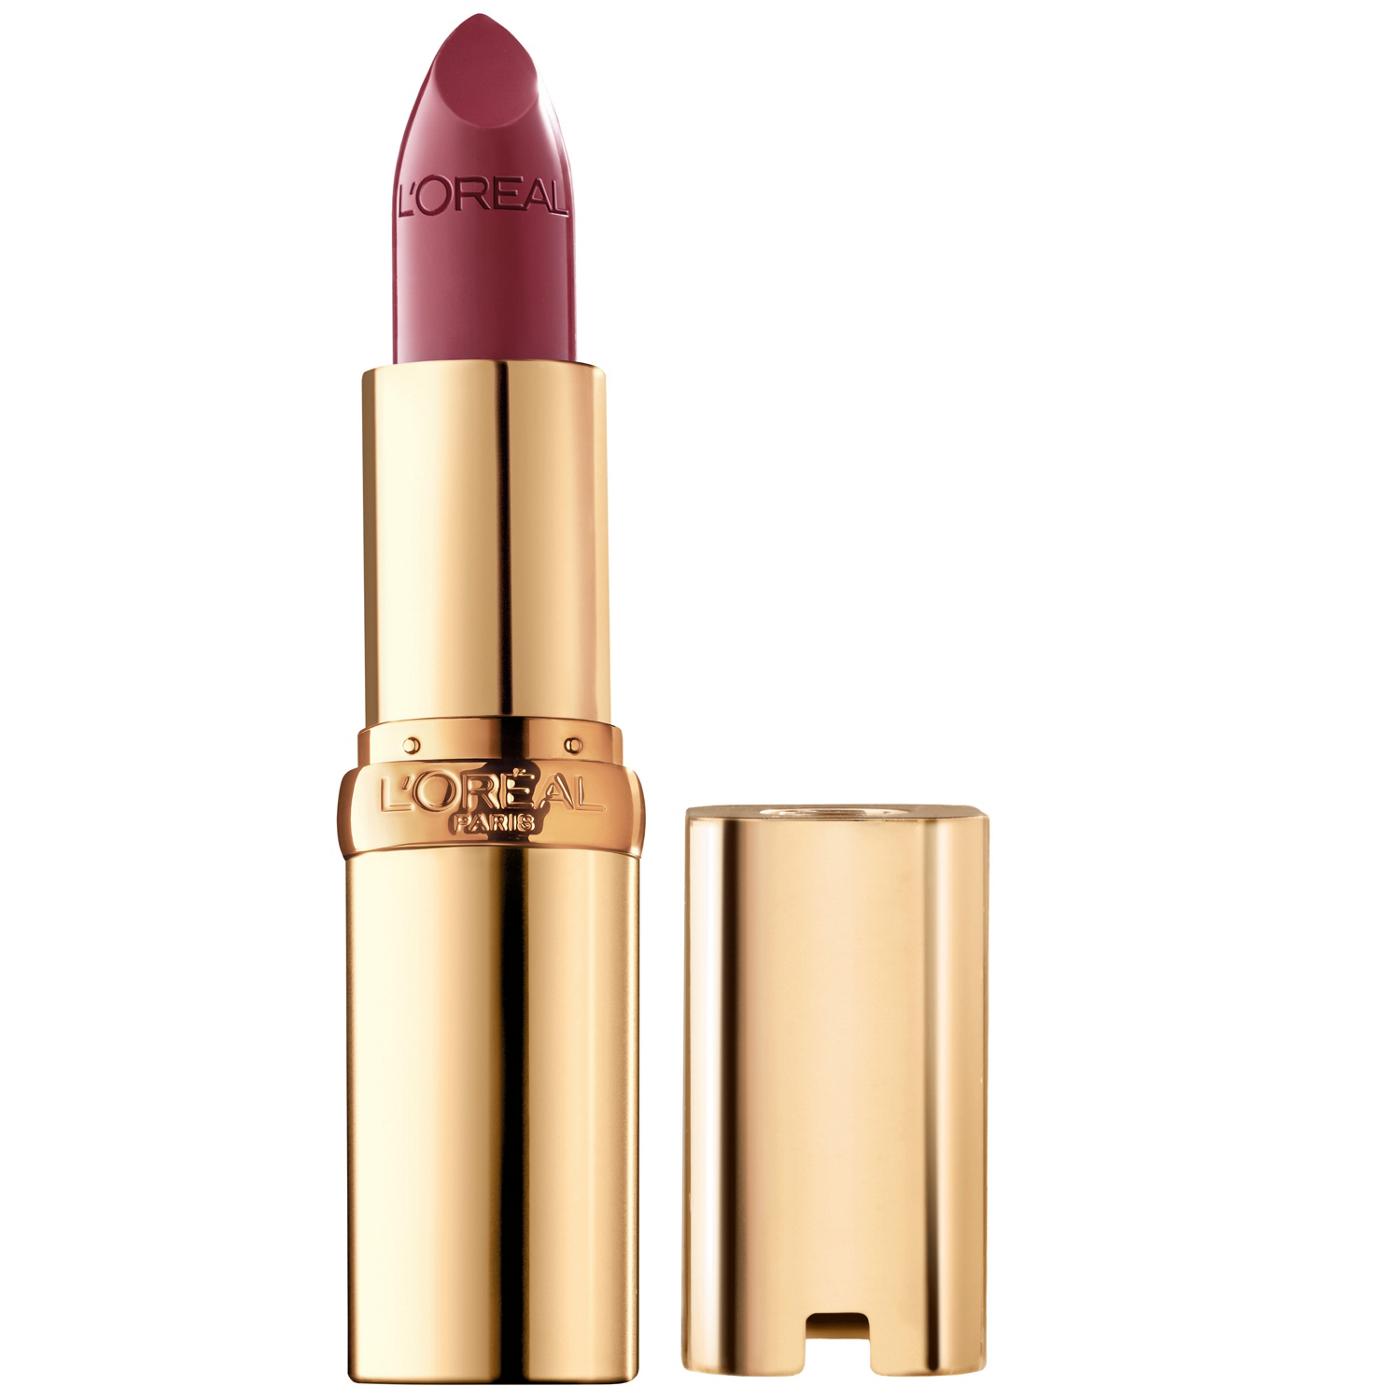 L'Oréal Paris Colour Riche Original Satin Lipstick - Blushing Berry; image 1 of 4